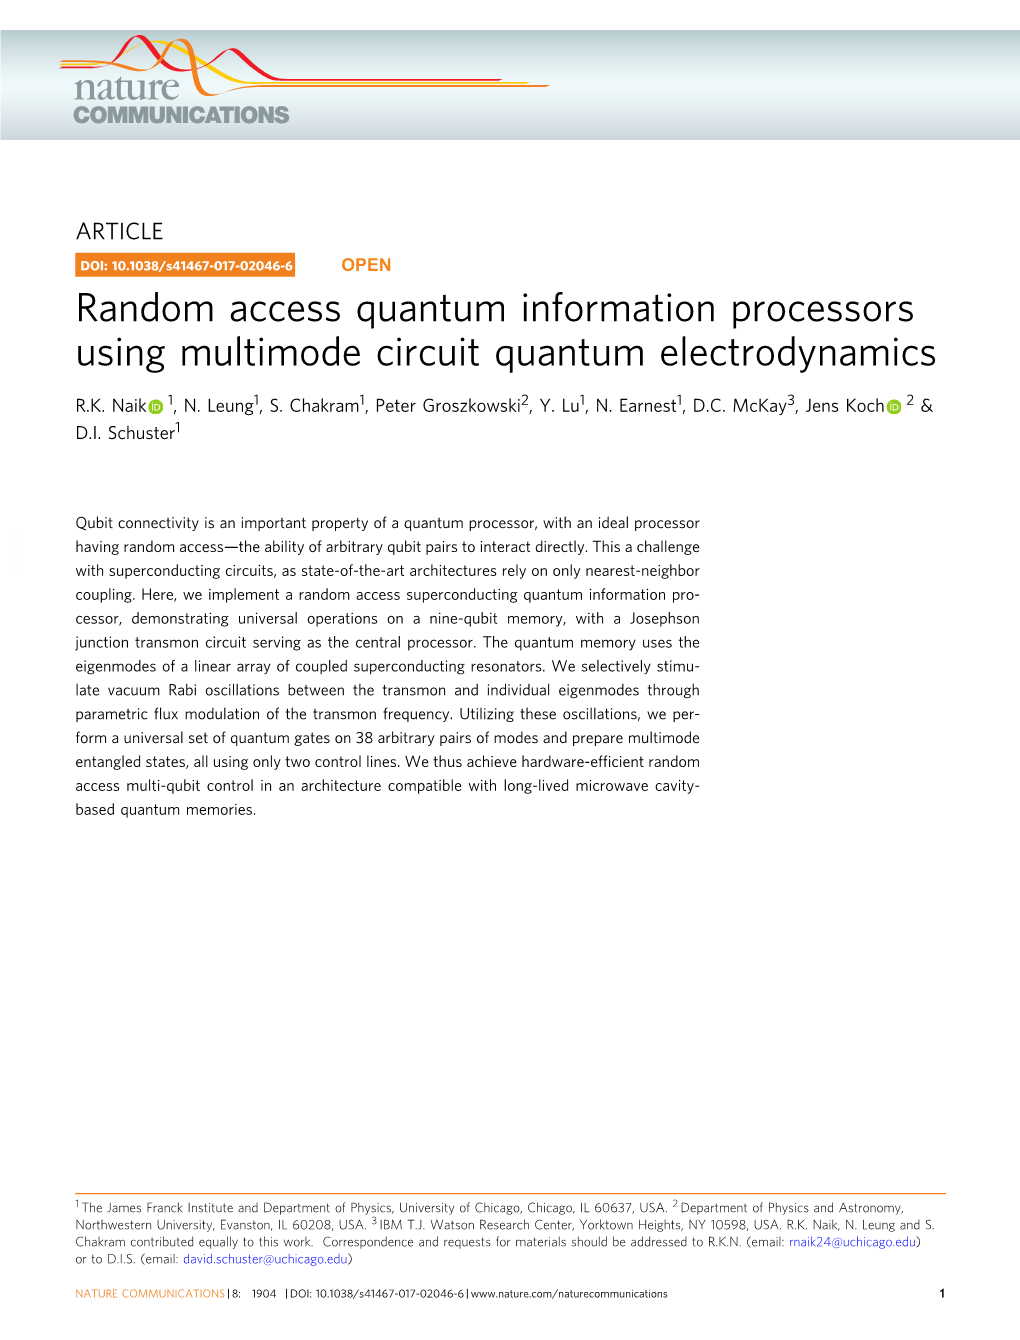 Random Access Quantum Information Processors Using Multimode Circuit Quantum Electrodynamics